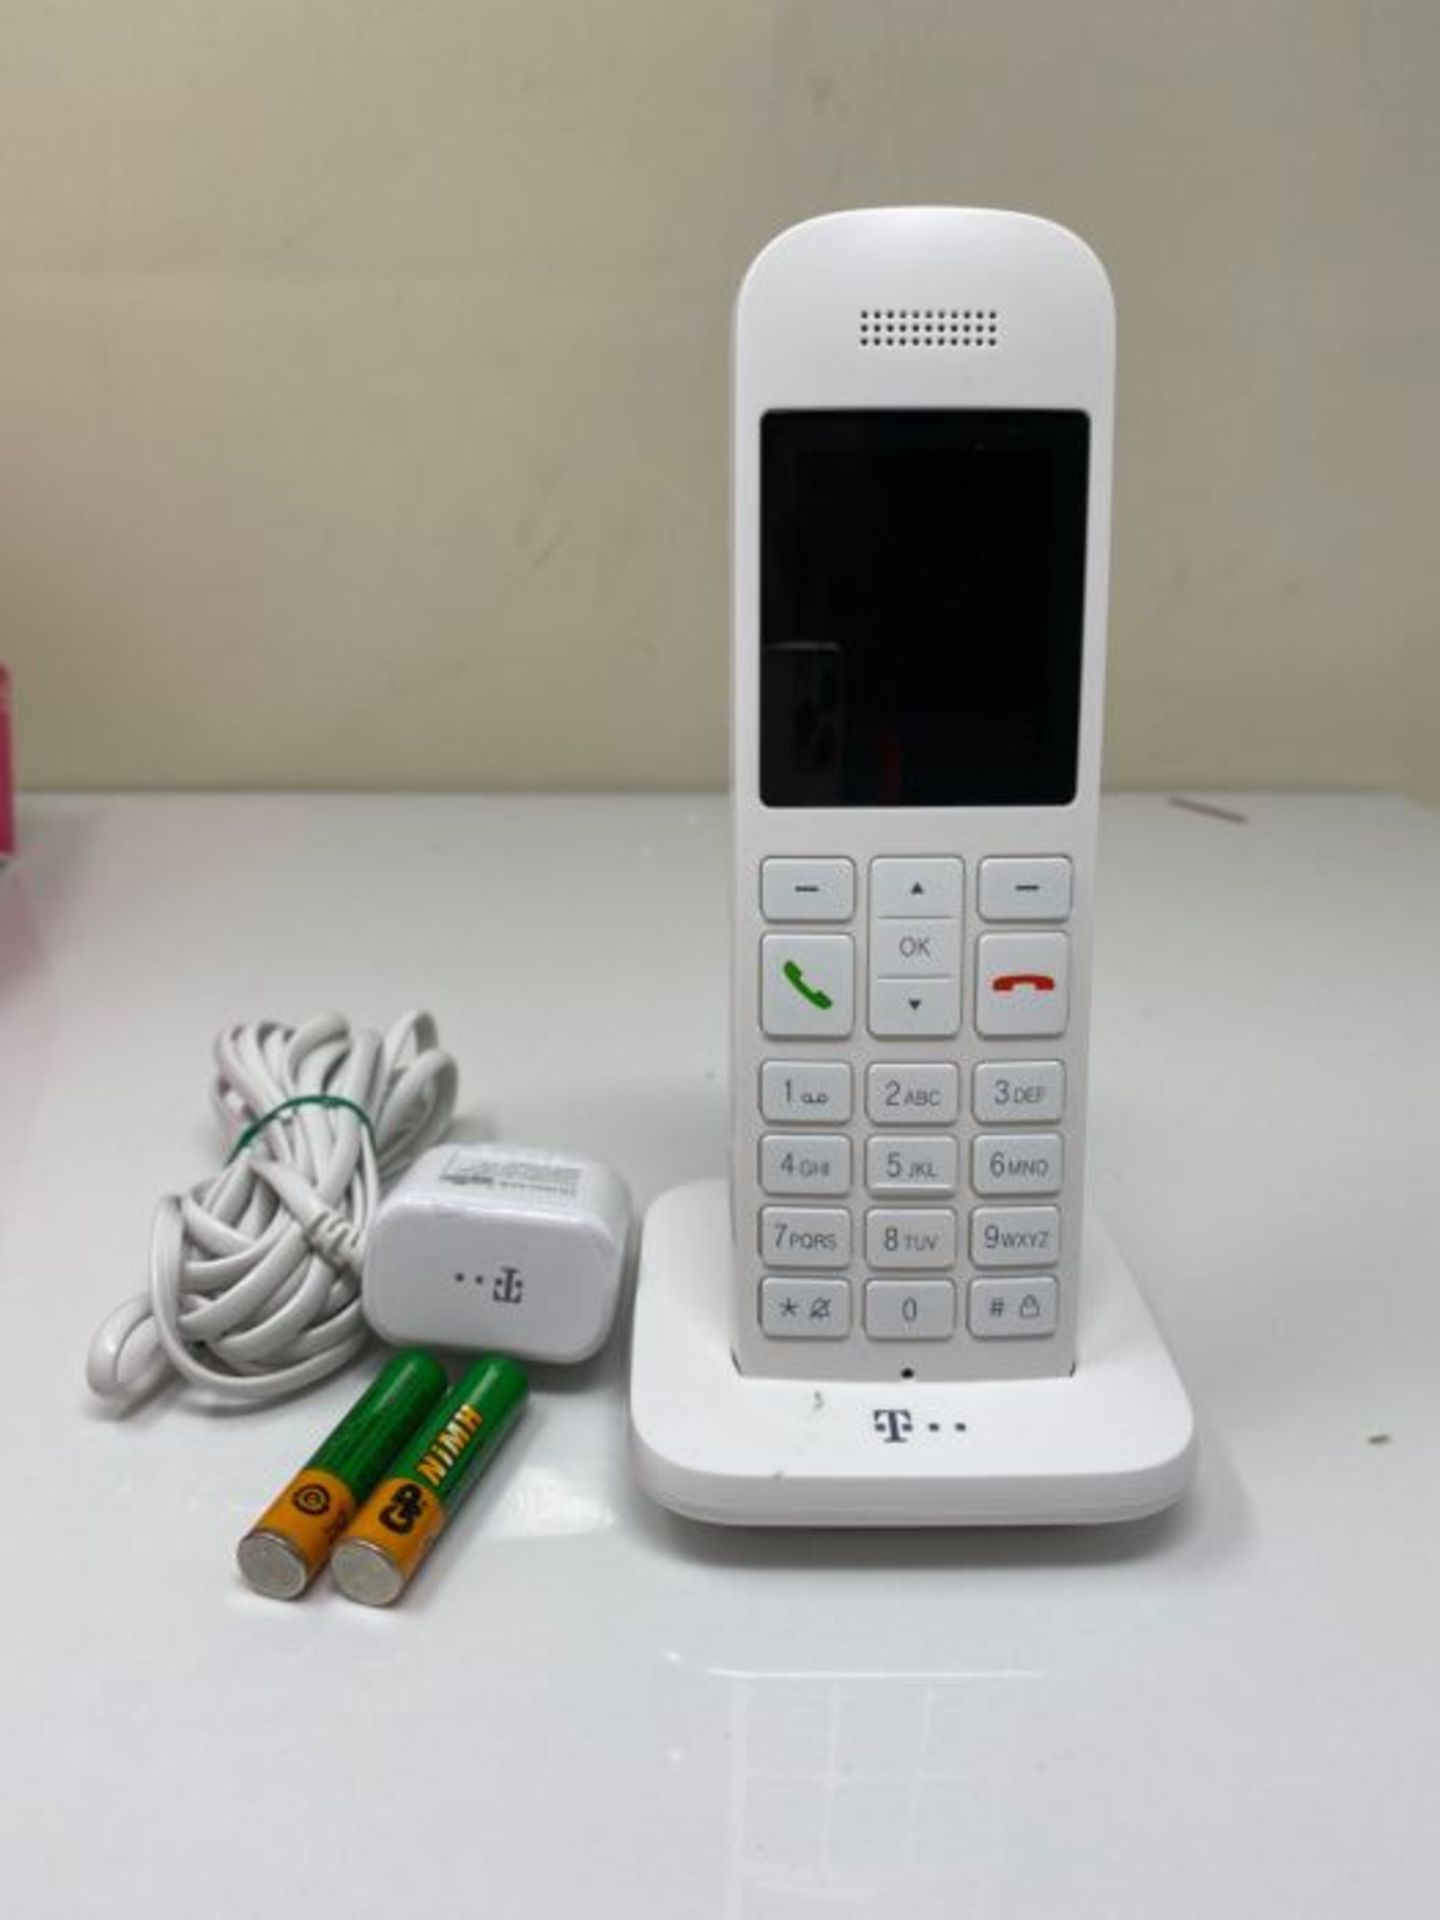 Telekom Speedphone 12 IP phone White Wireless handset TFT - Telekom Speedphone 12, Whi - Image 3 of 3